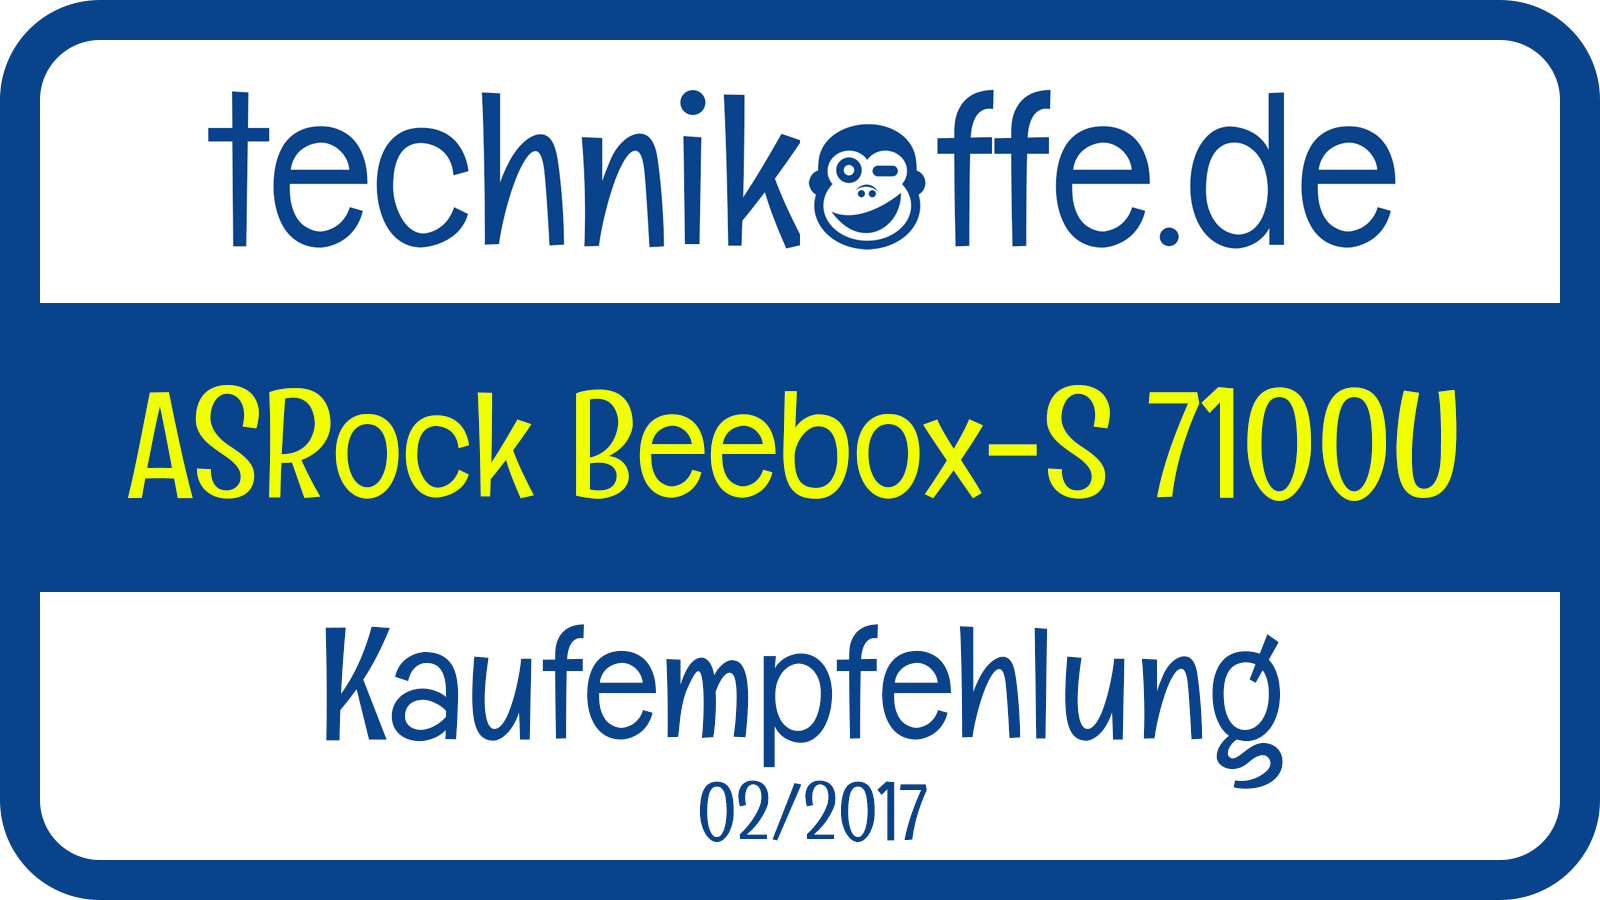 ASRock Beebox-S 7100U im Test unter Windows 10 und LibreELEC 165